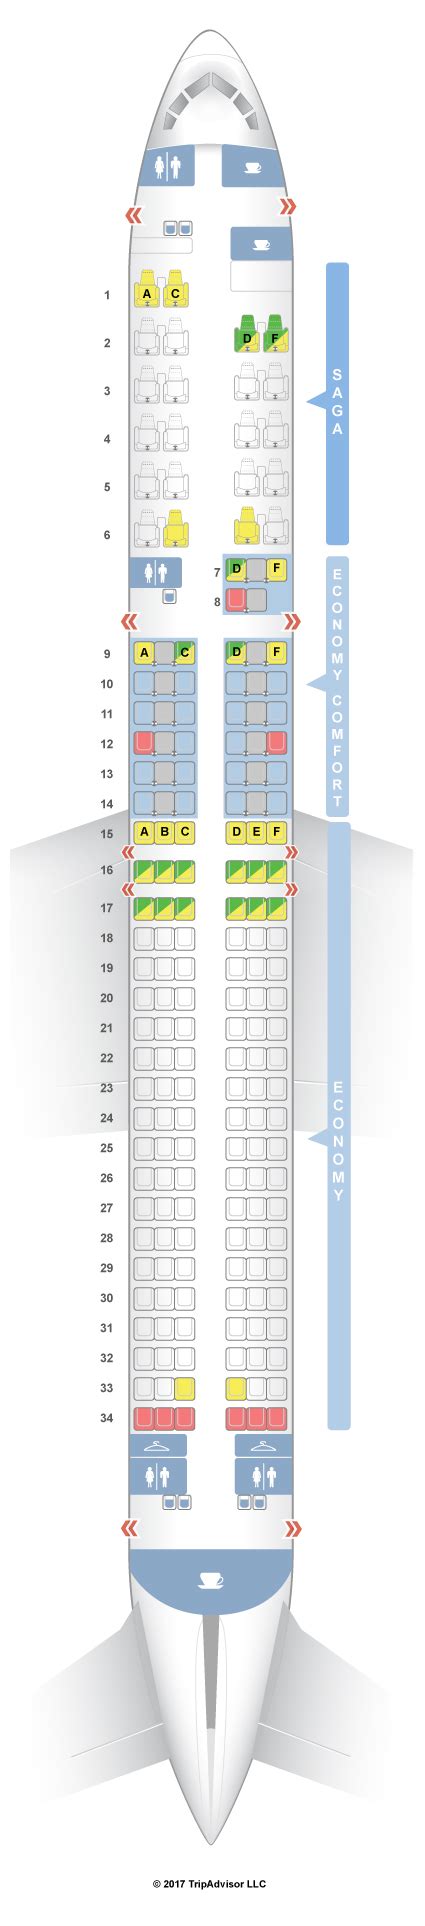 Sitzplan Boeing 757-300 Icelandair. Flugzeug Boeing 757-300 Icelandair mit 2 Klassen und 216 Sitzen an Bord. Dank dem Flugzeug-Sitzplan können Sie herausfinden, welche Plätze komfortabler sind und welche am besten vermieden werden sollten. Tippen Sie auf den Sitz auf der Karte, um die Details anzuzeigen.